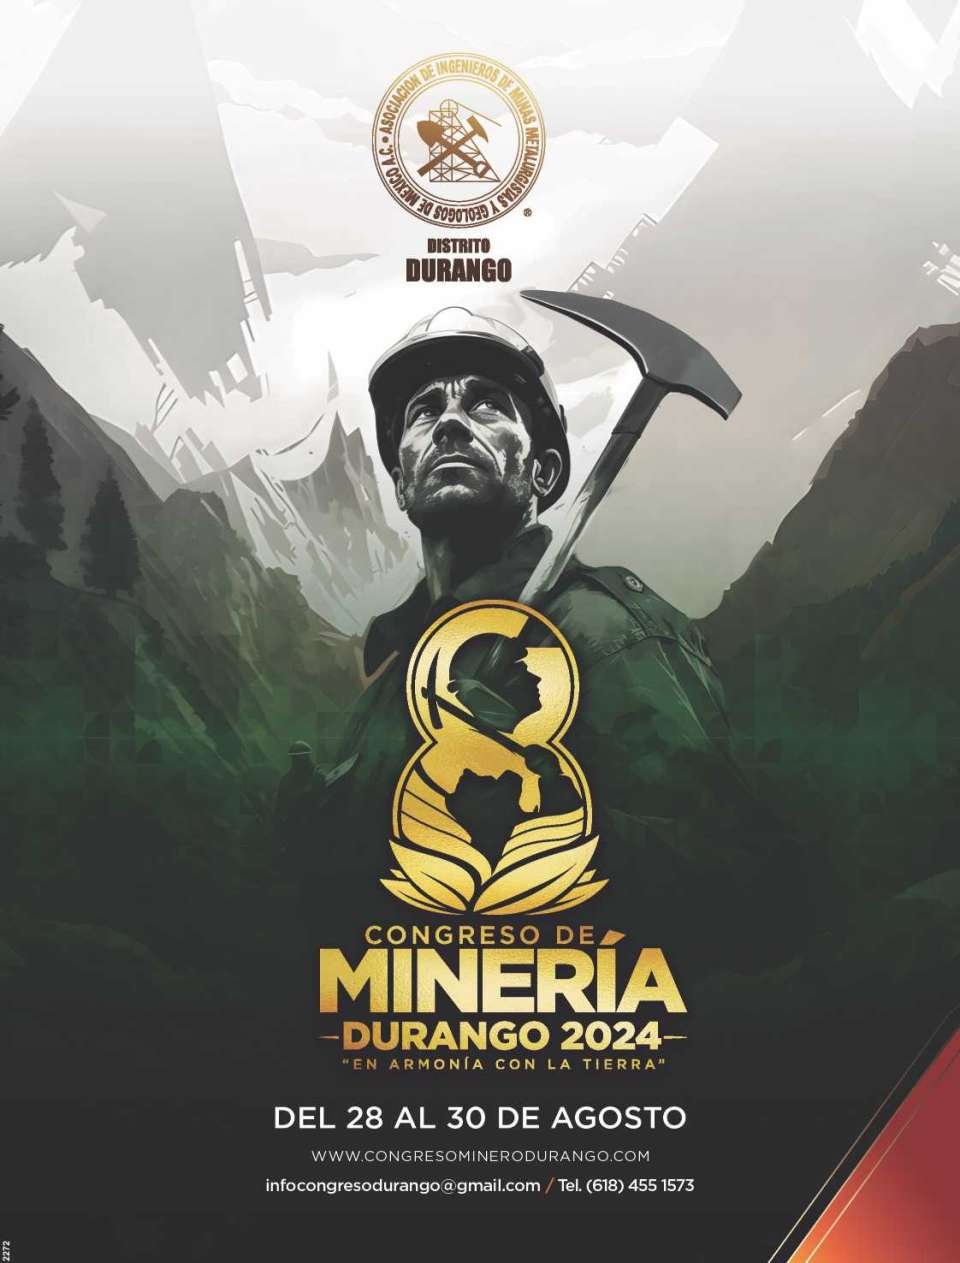 Exposicion y Congreso de Mineria, del 24 al 26 de Agosto 2022 en la ciudad de Durango, Mexico.